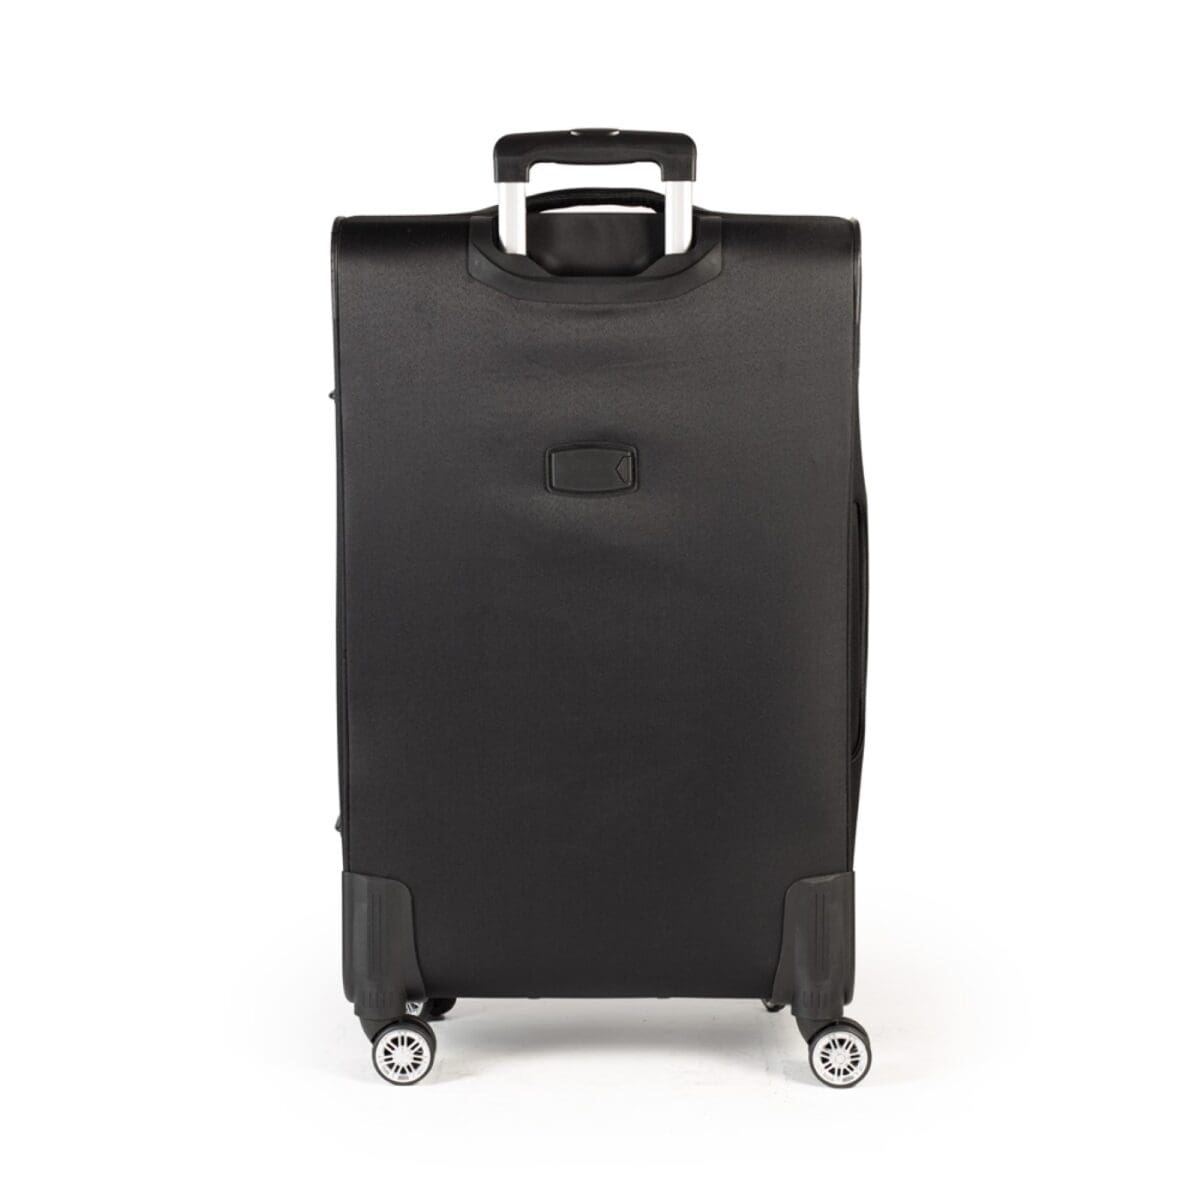 Πίσω πλευρά βαλίτσας με ταμπελάκι για στοιχεία σε μαύρο χρώμα